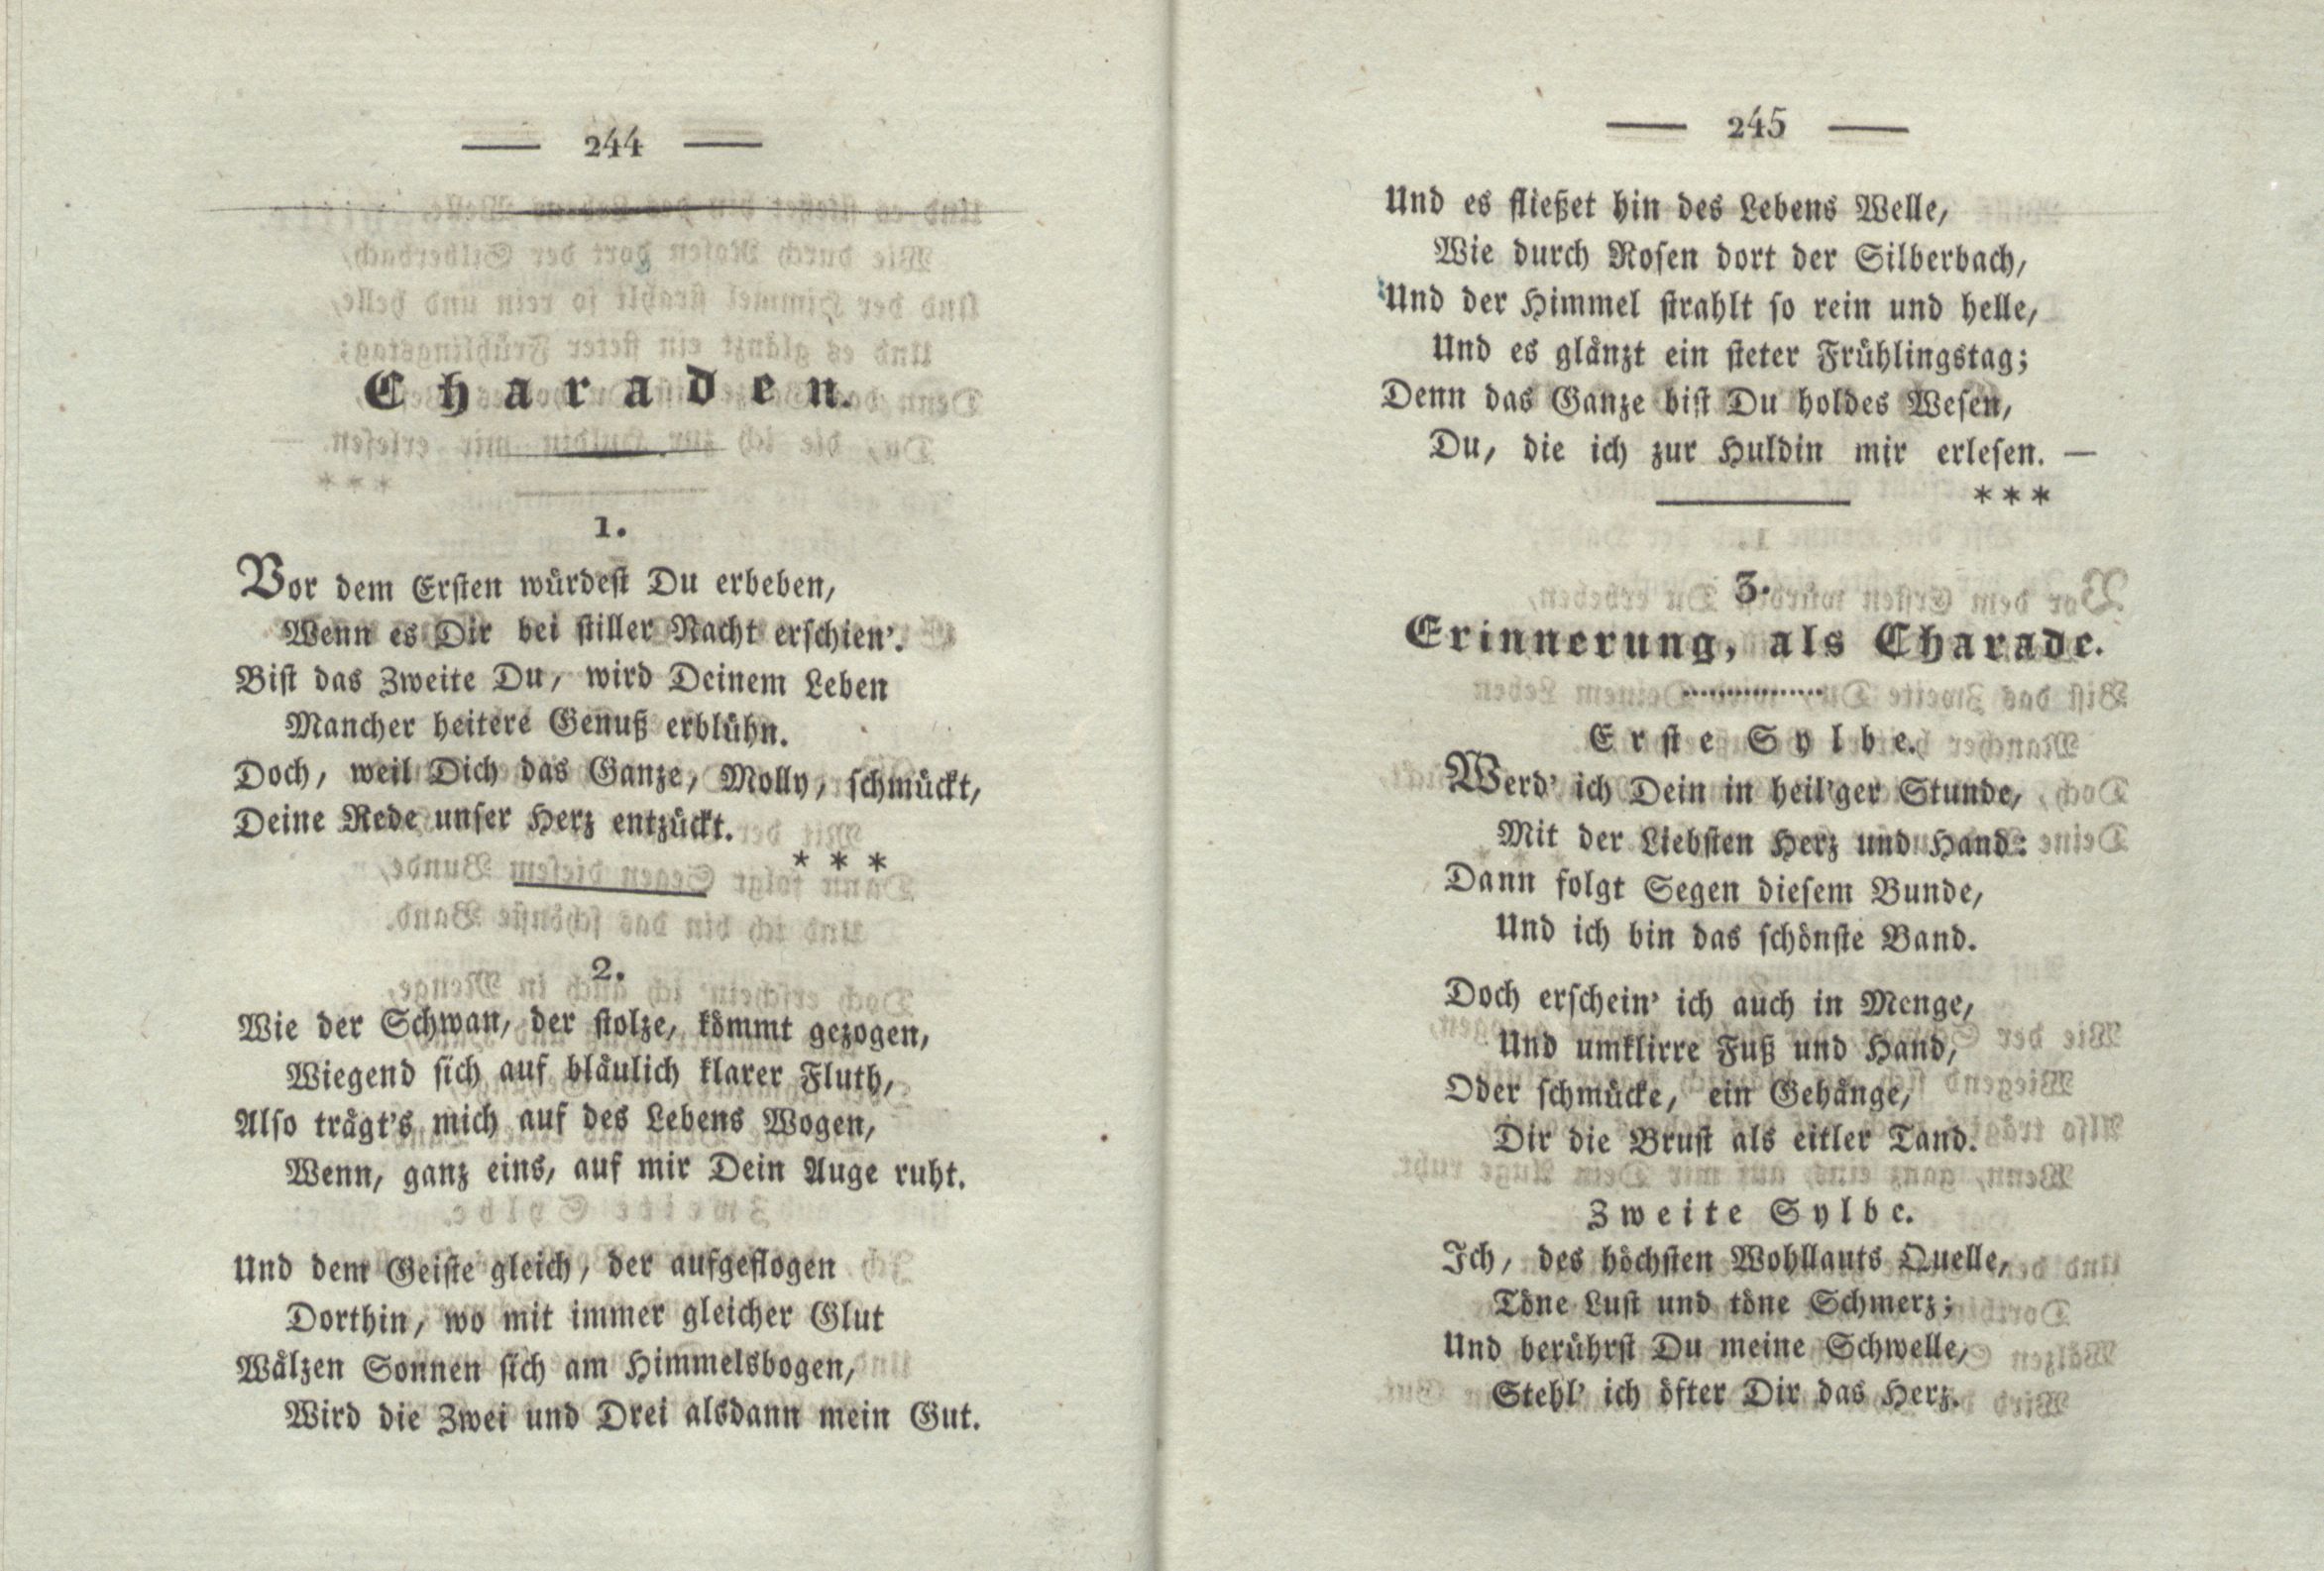 Charaden (1825) | 1. (244-245) Main body of text